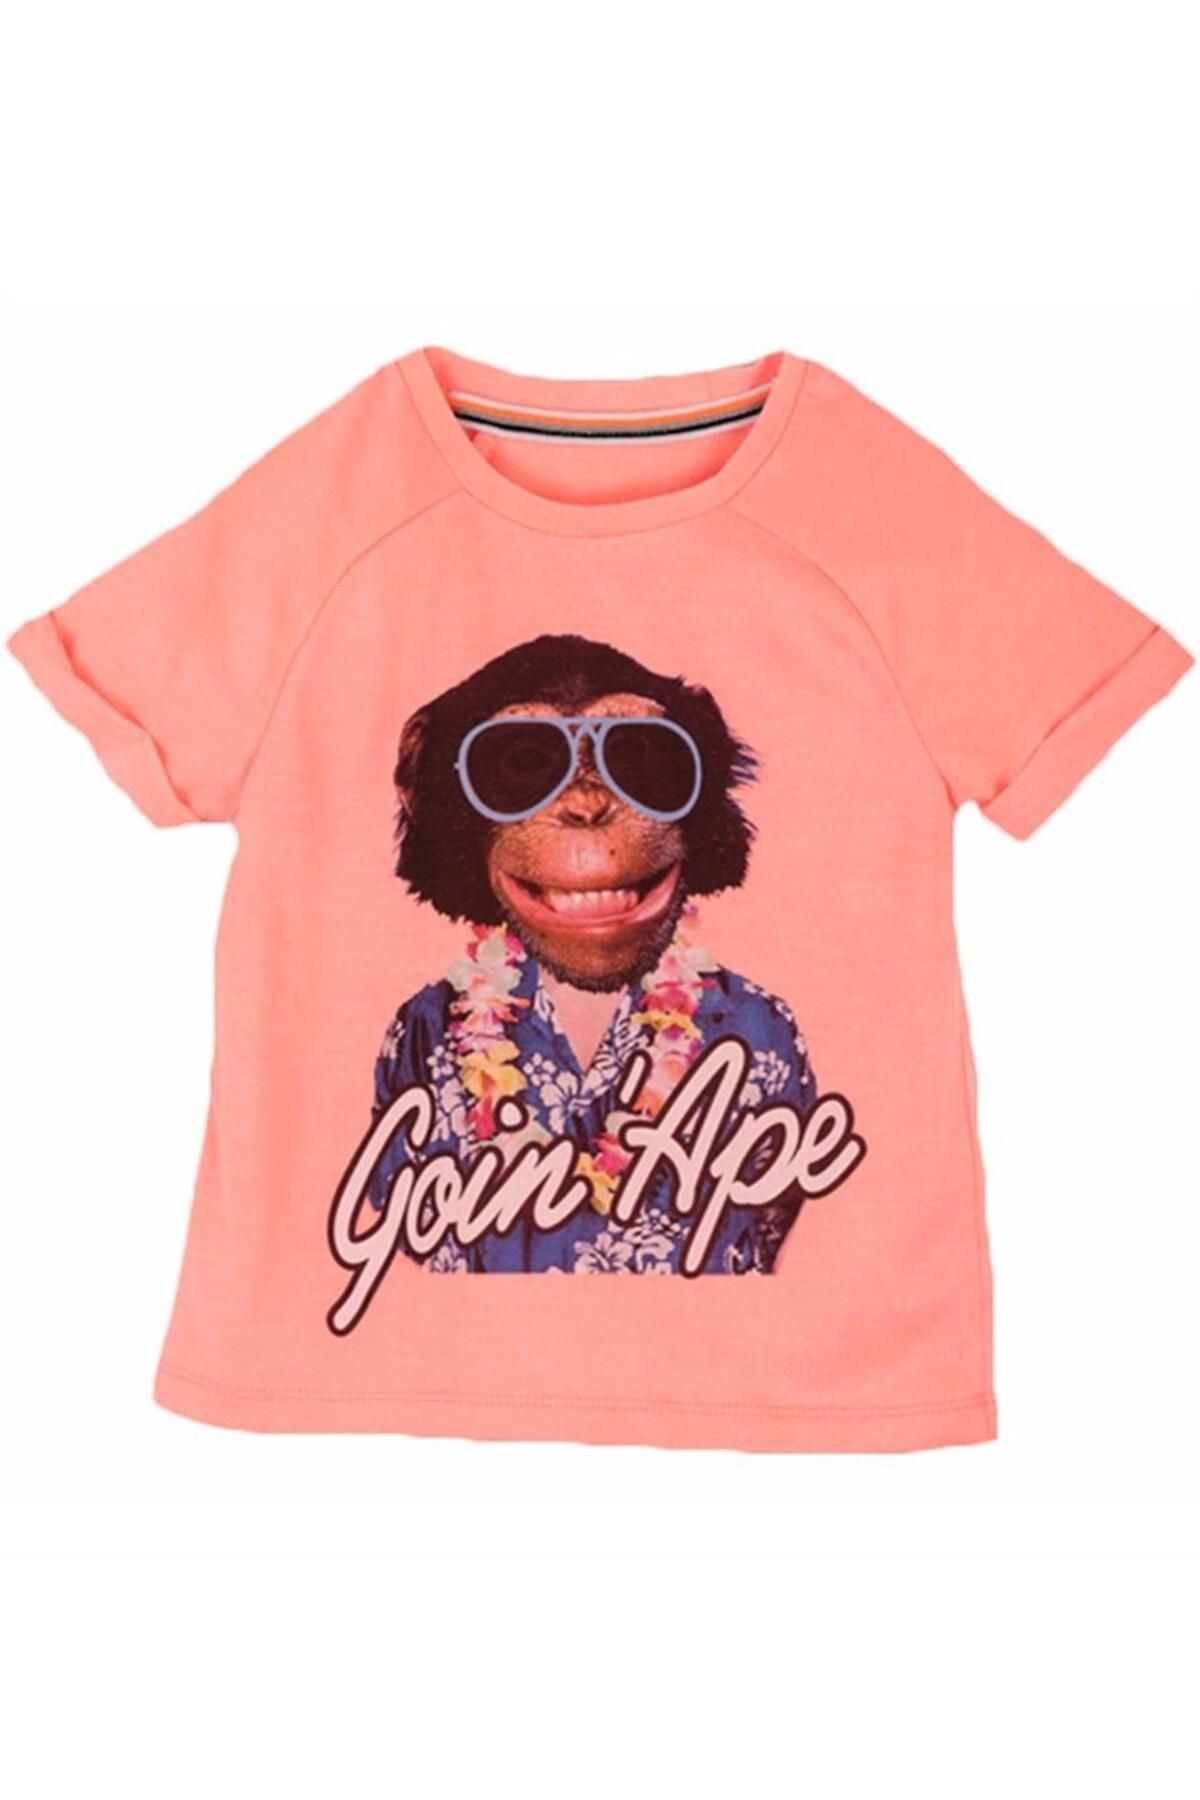 Mamino Erkek Çocuk Maymun Desenli T-shirt 8715 Pembe